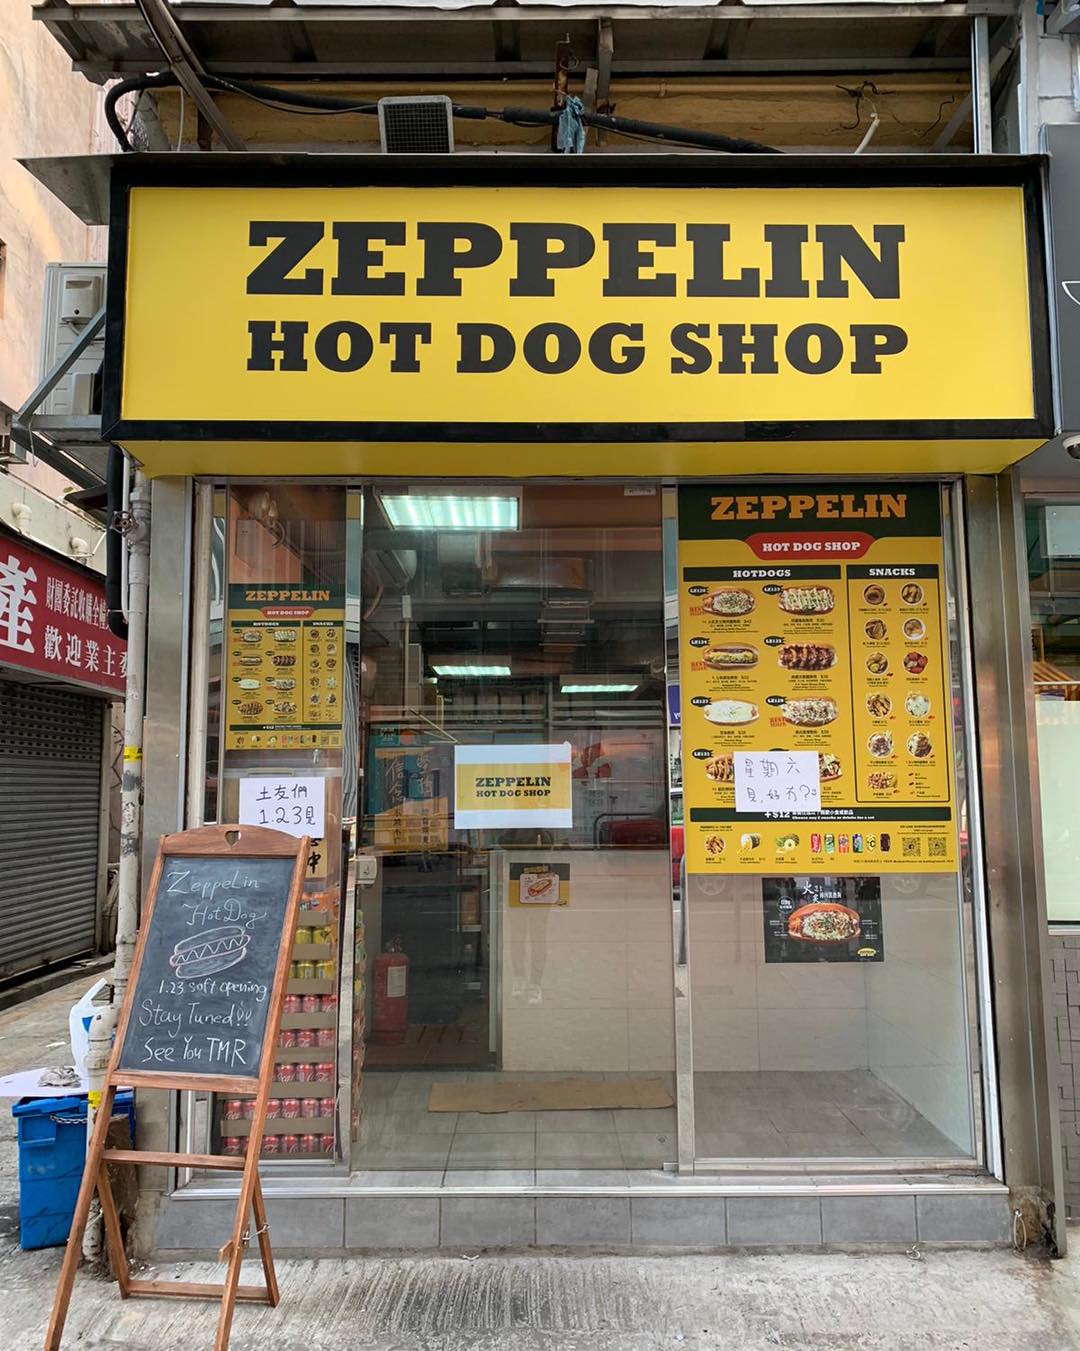 齊柏林熱狗 Zeppelin Hot Dog的特許經營香港區加盟店項目8